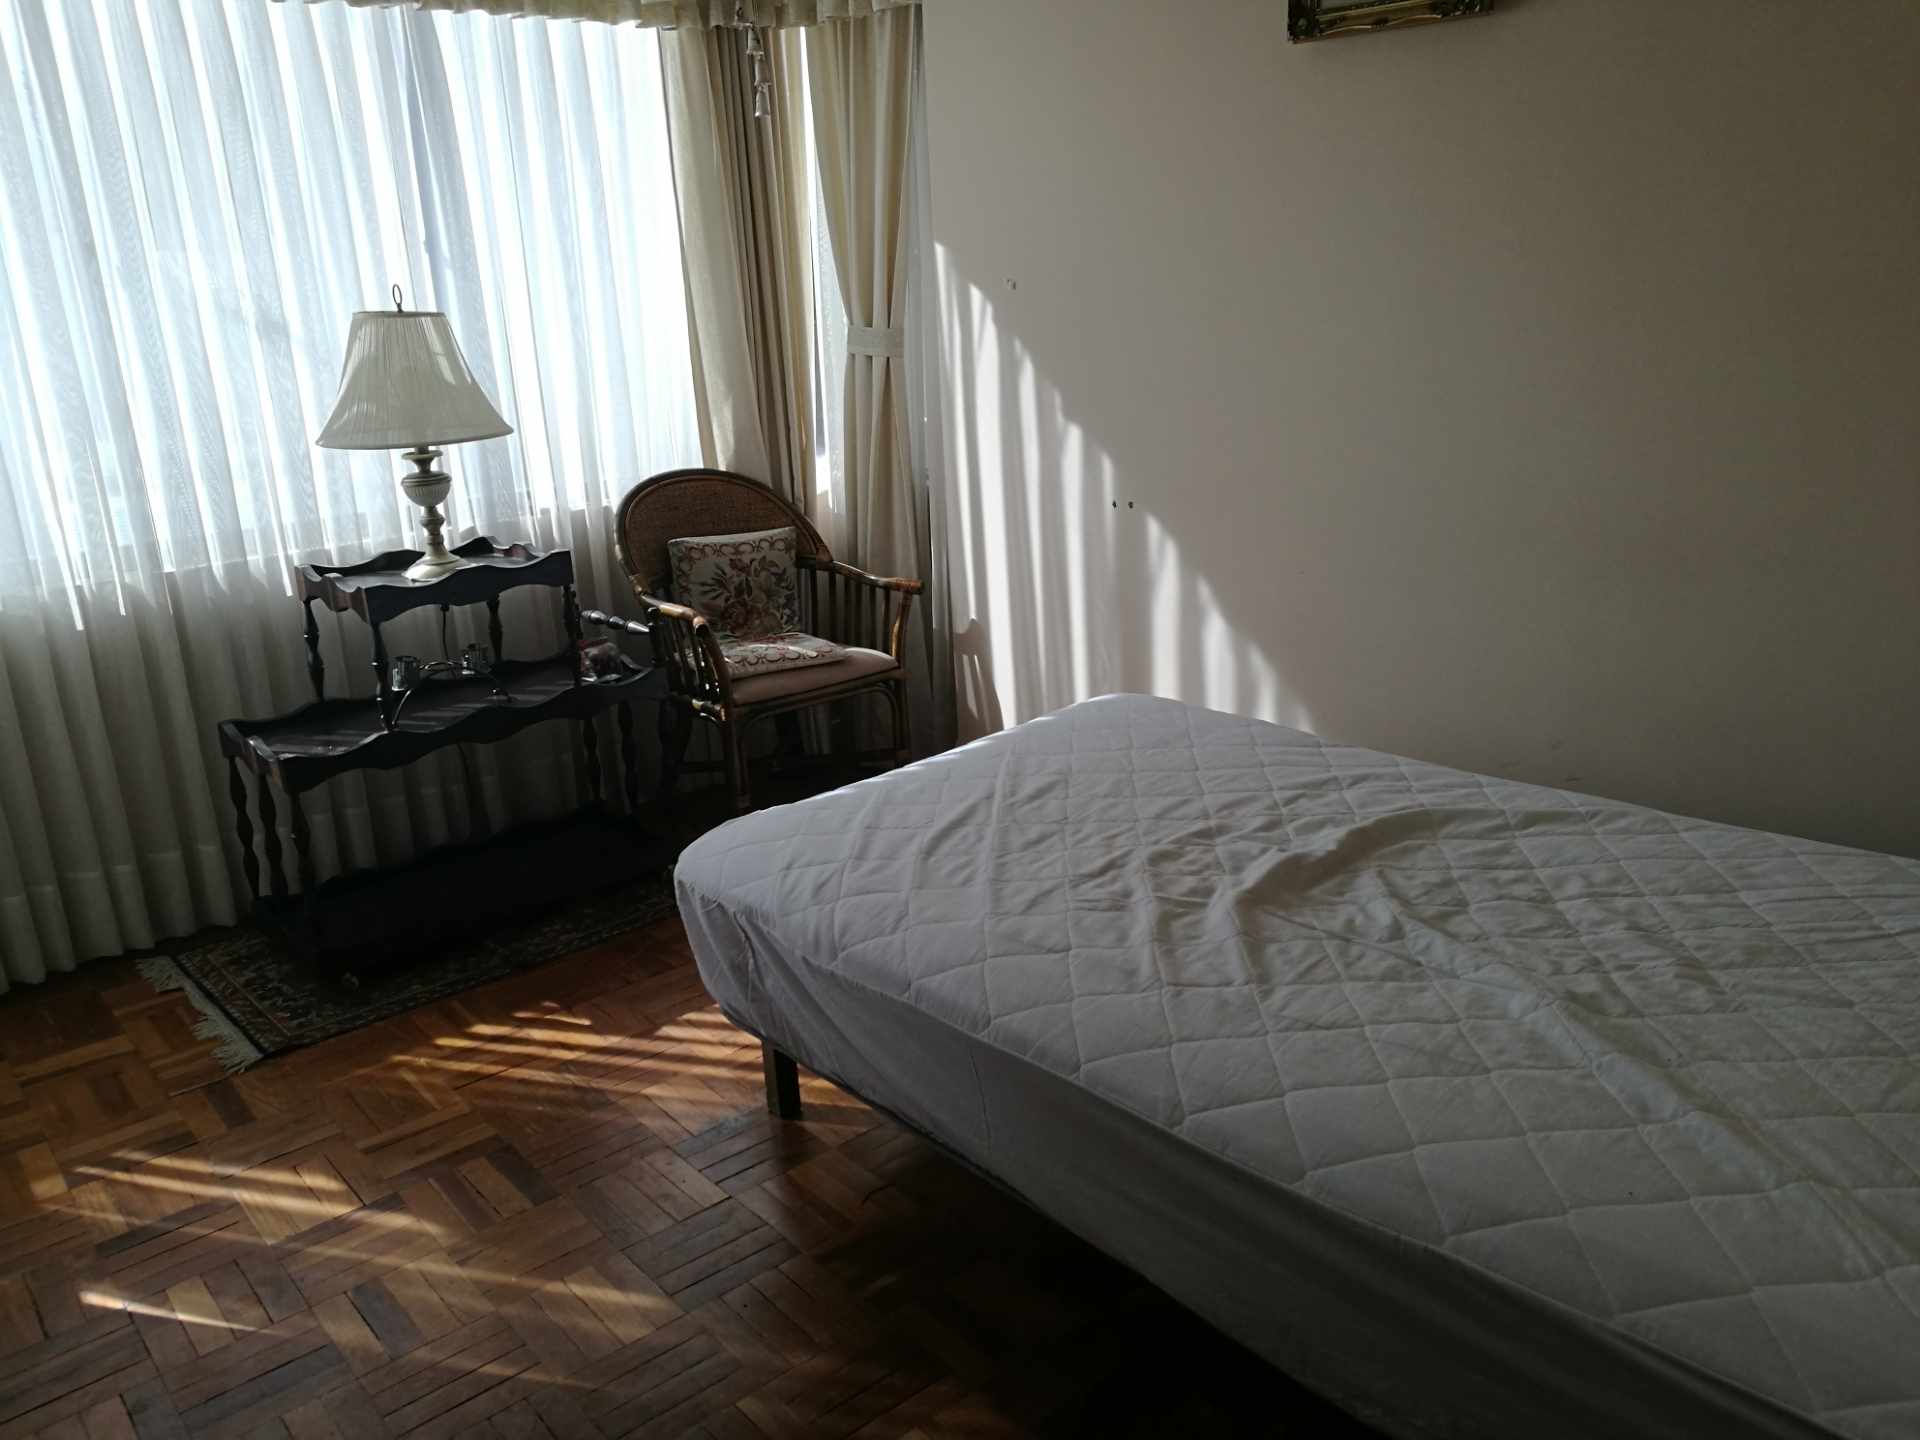 Departamento Los Nuevos Pinos bonito departamento amoblado y equipado de 2 dormitorios en suite, living - comedor, chimenea. Foto 4